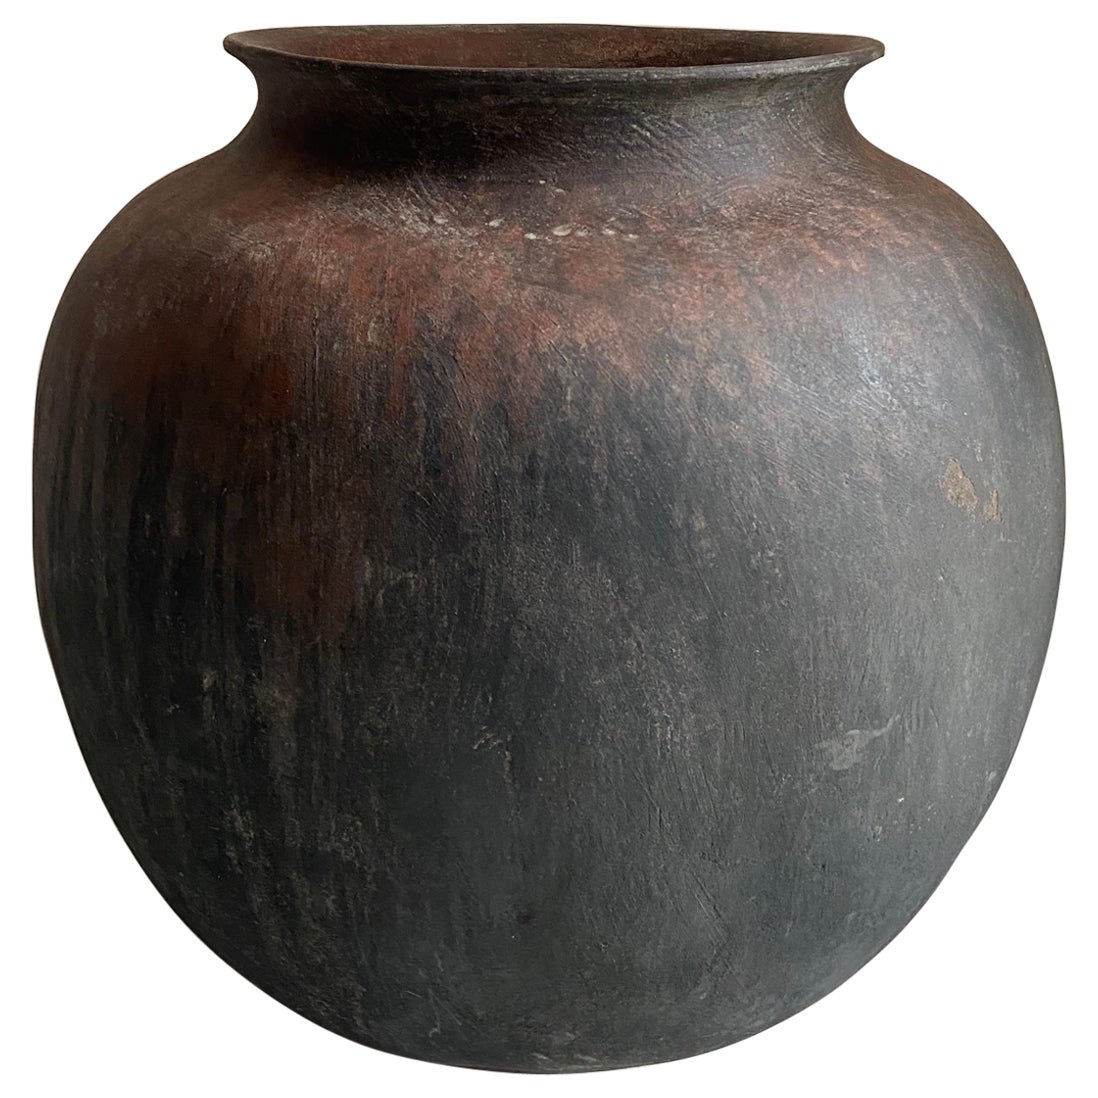 Mid-20th Century Ceramic Pot from Mexico